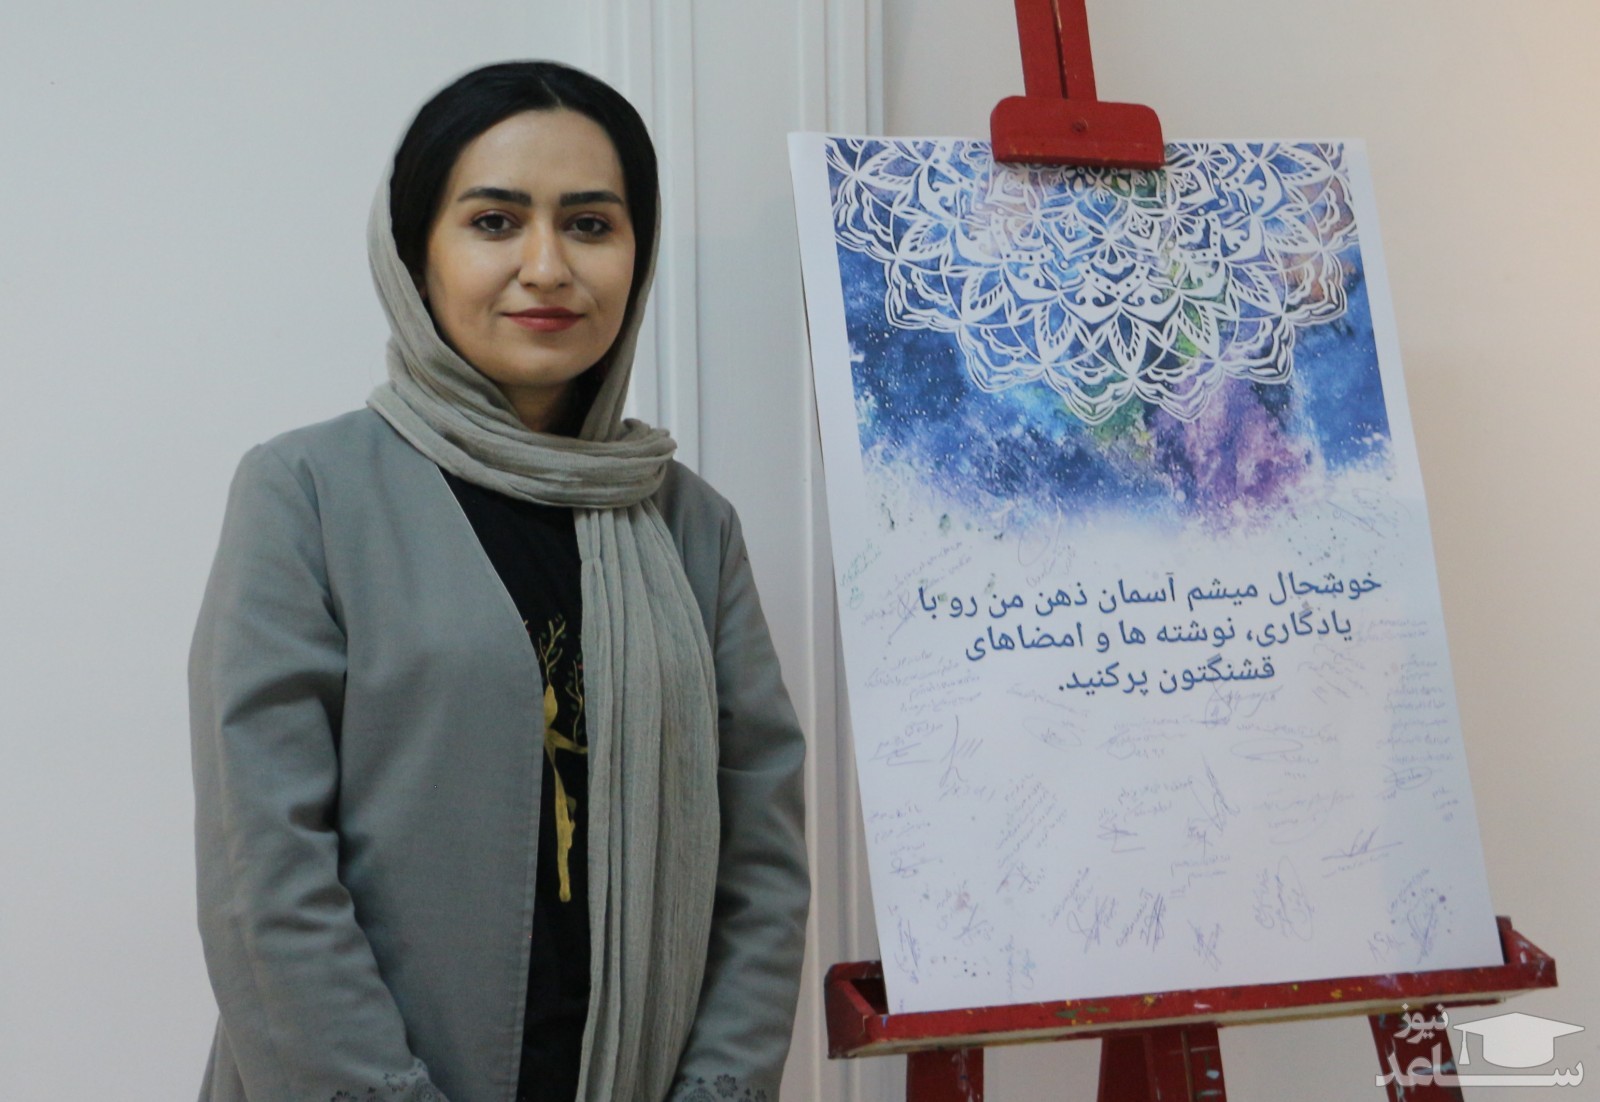 برگزاری نمایشگاه انفرادی ماندالای ساناز حبیبی در تبریز با عنوان " آسمان ذهن من "